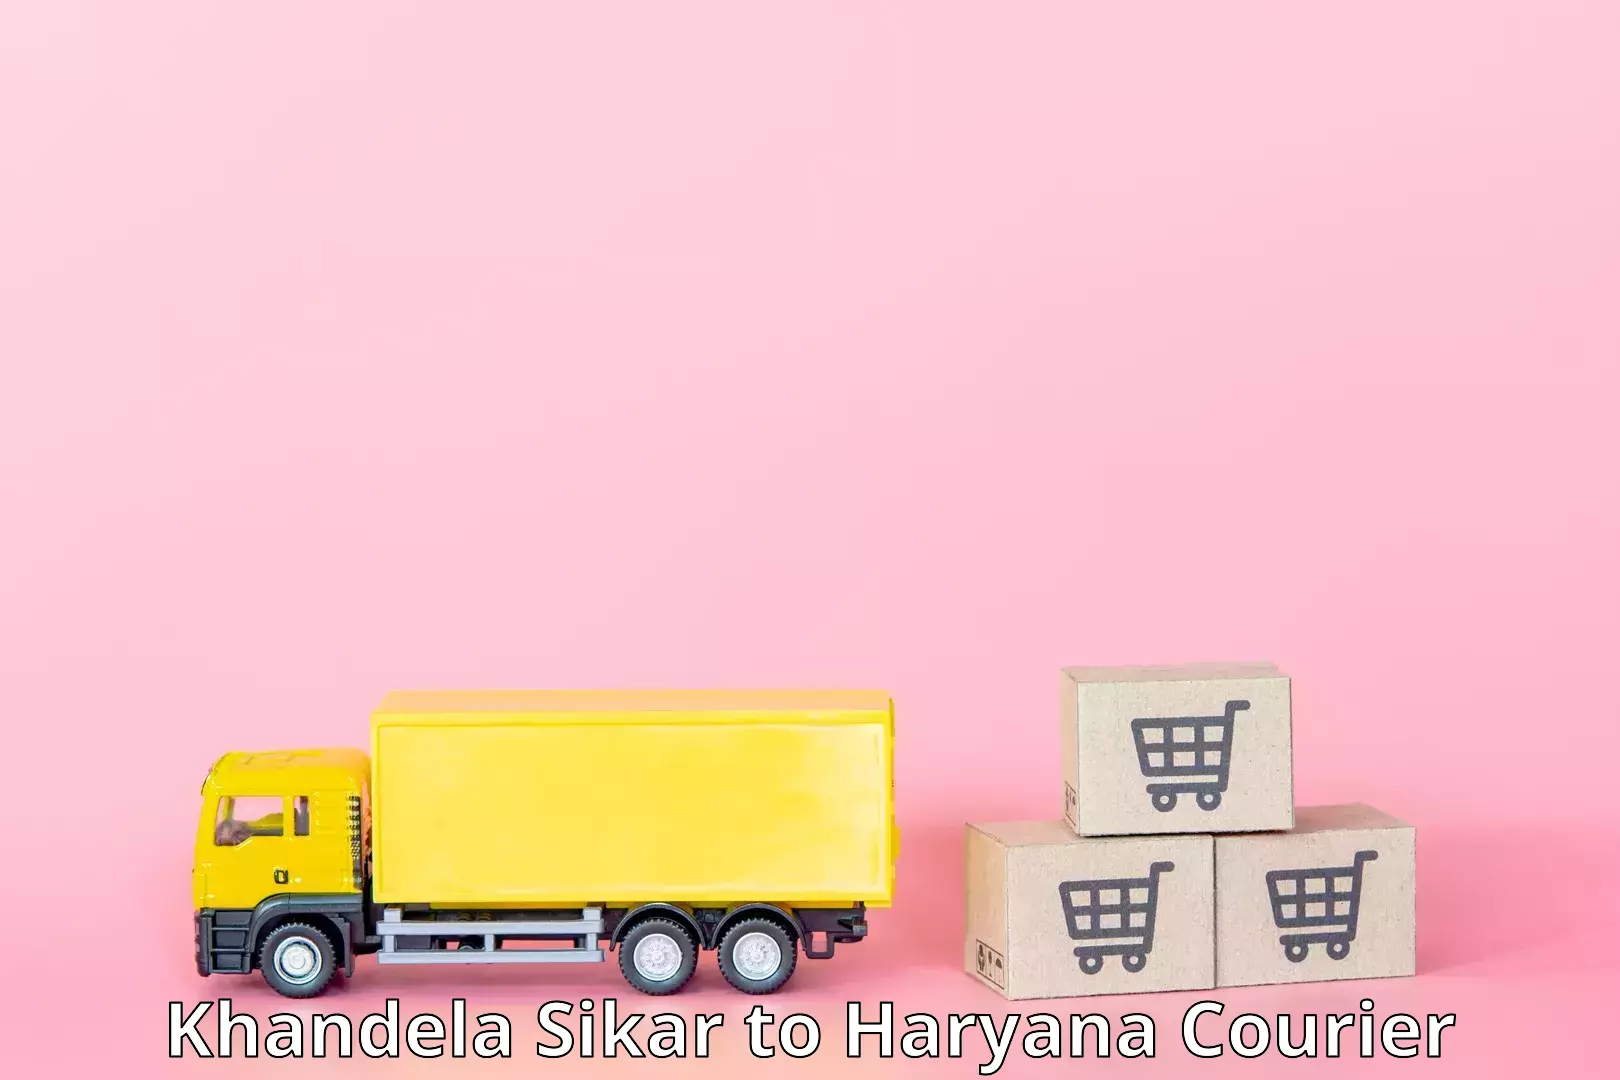 Ocean freight courier Khandela Sikar to Haryana